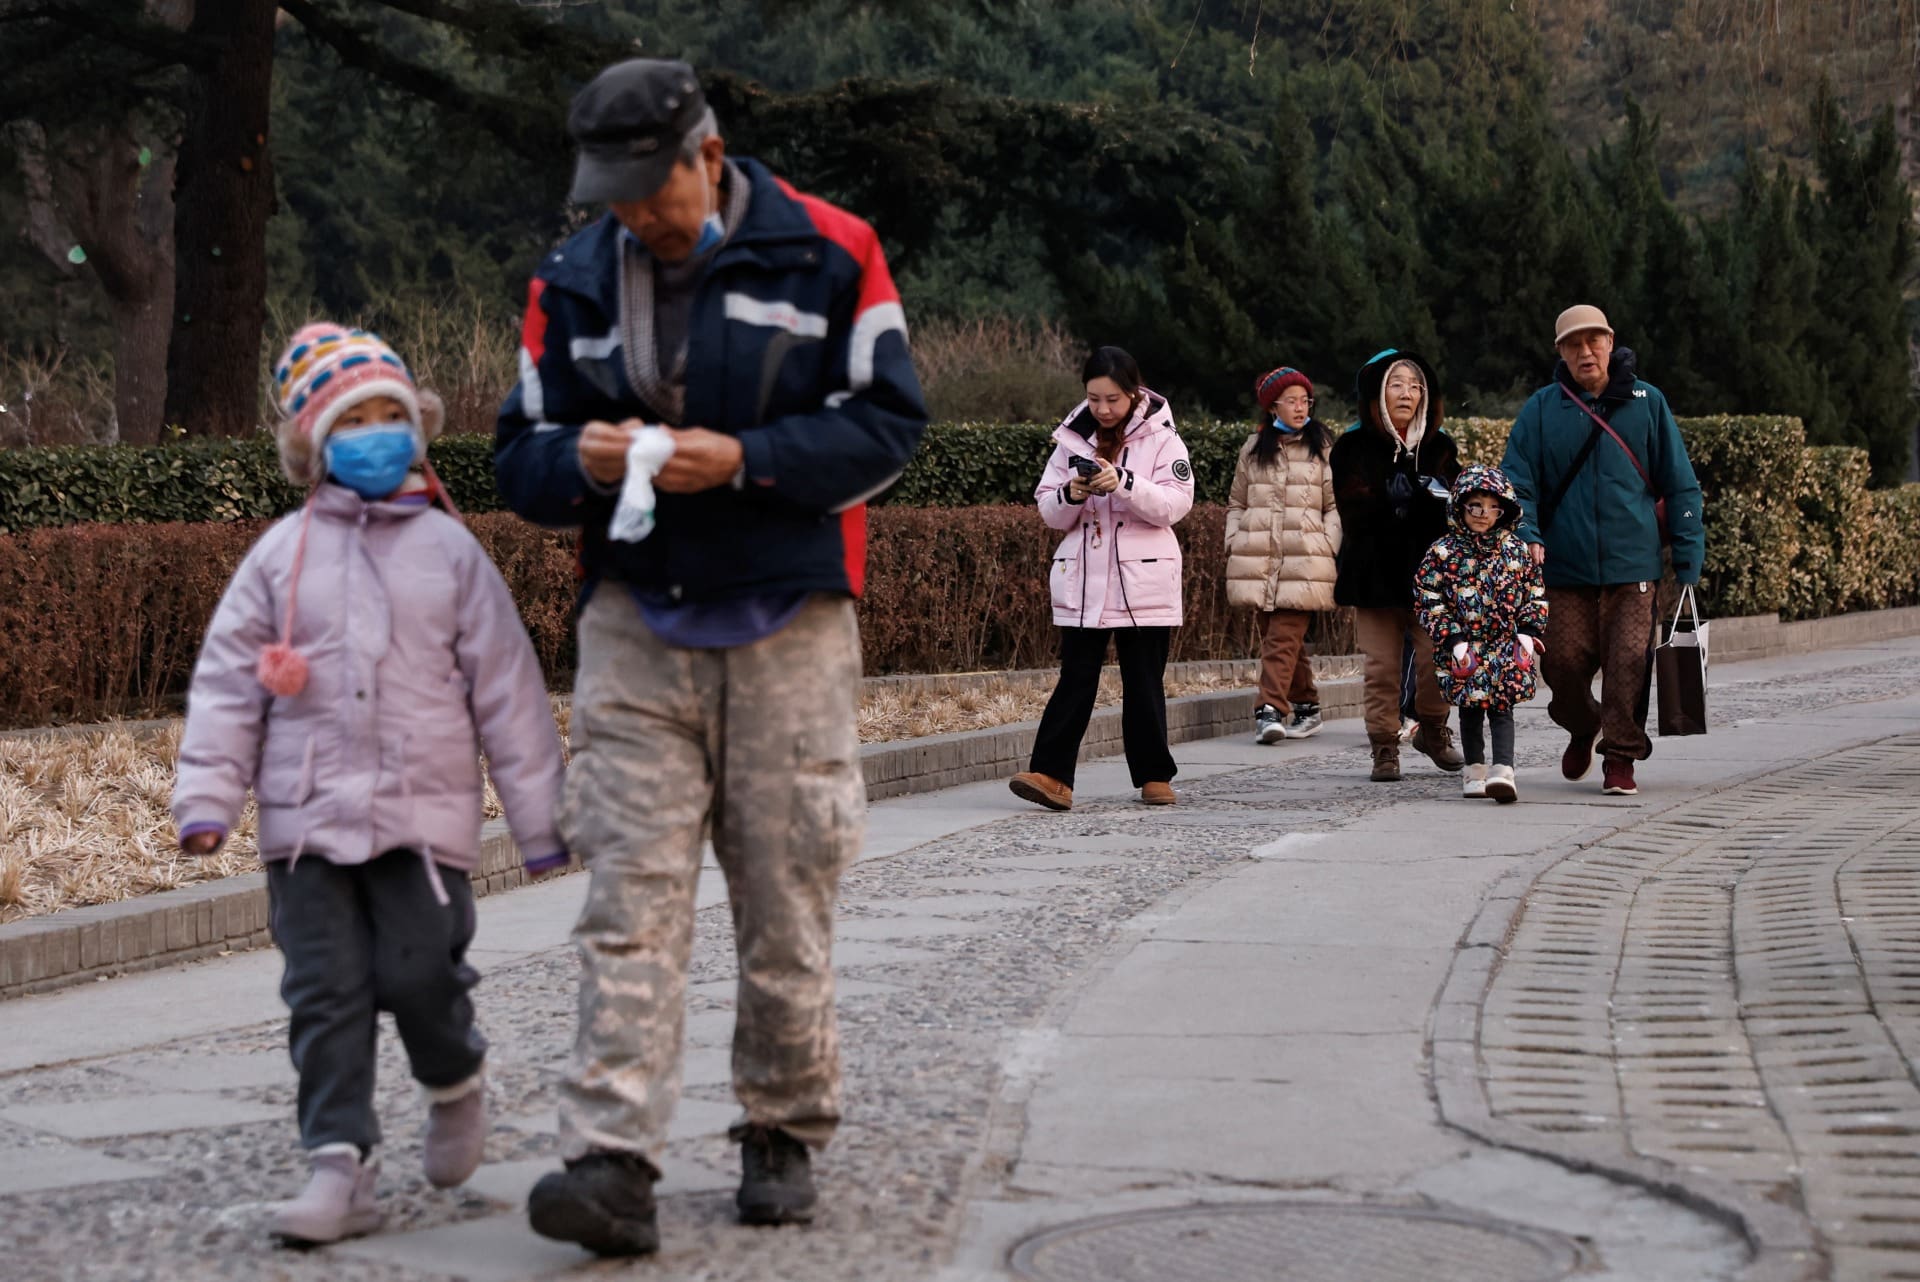 O envelhecimento progressivo da população está a deixar as autoridades chinesas preocupadas. Em 2035, haverá 400 milhões de pessoas com mais de 60 anos, o que representará mais de 30 % da população chinesa.